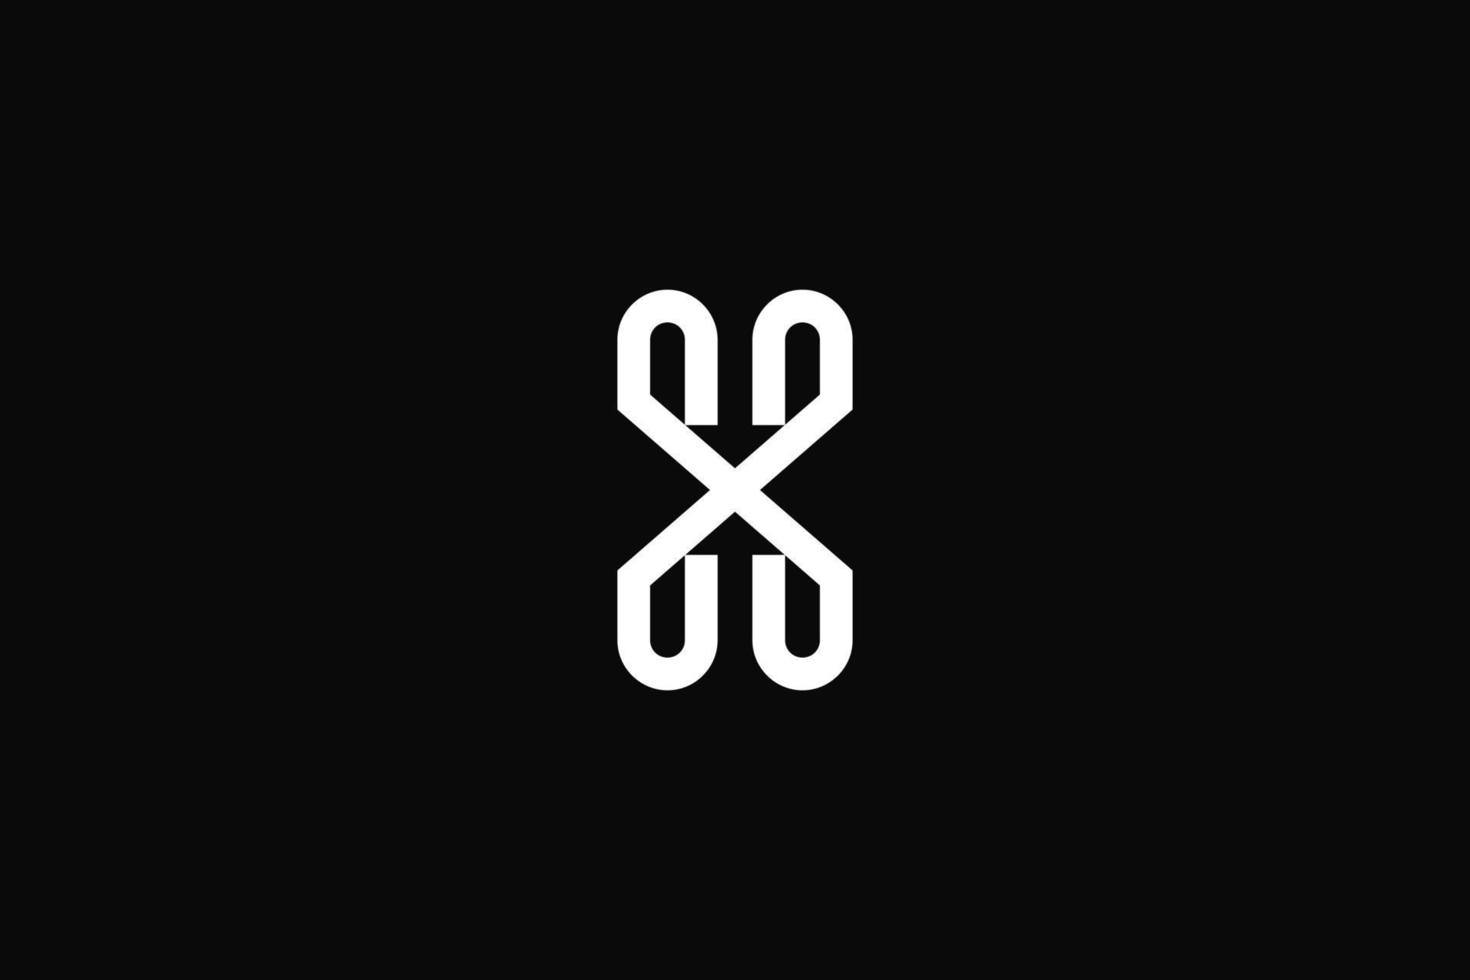 lettera h o x o logo della freccia hx. disegno vettoriale. vettore